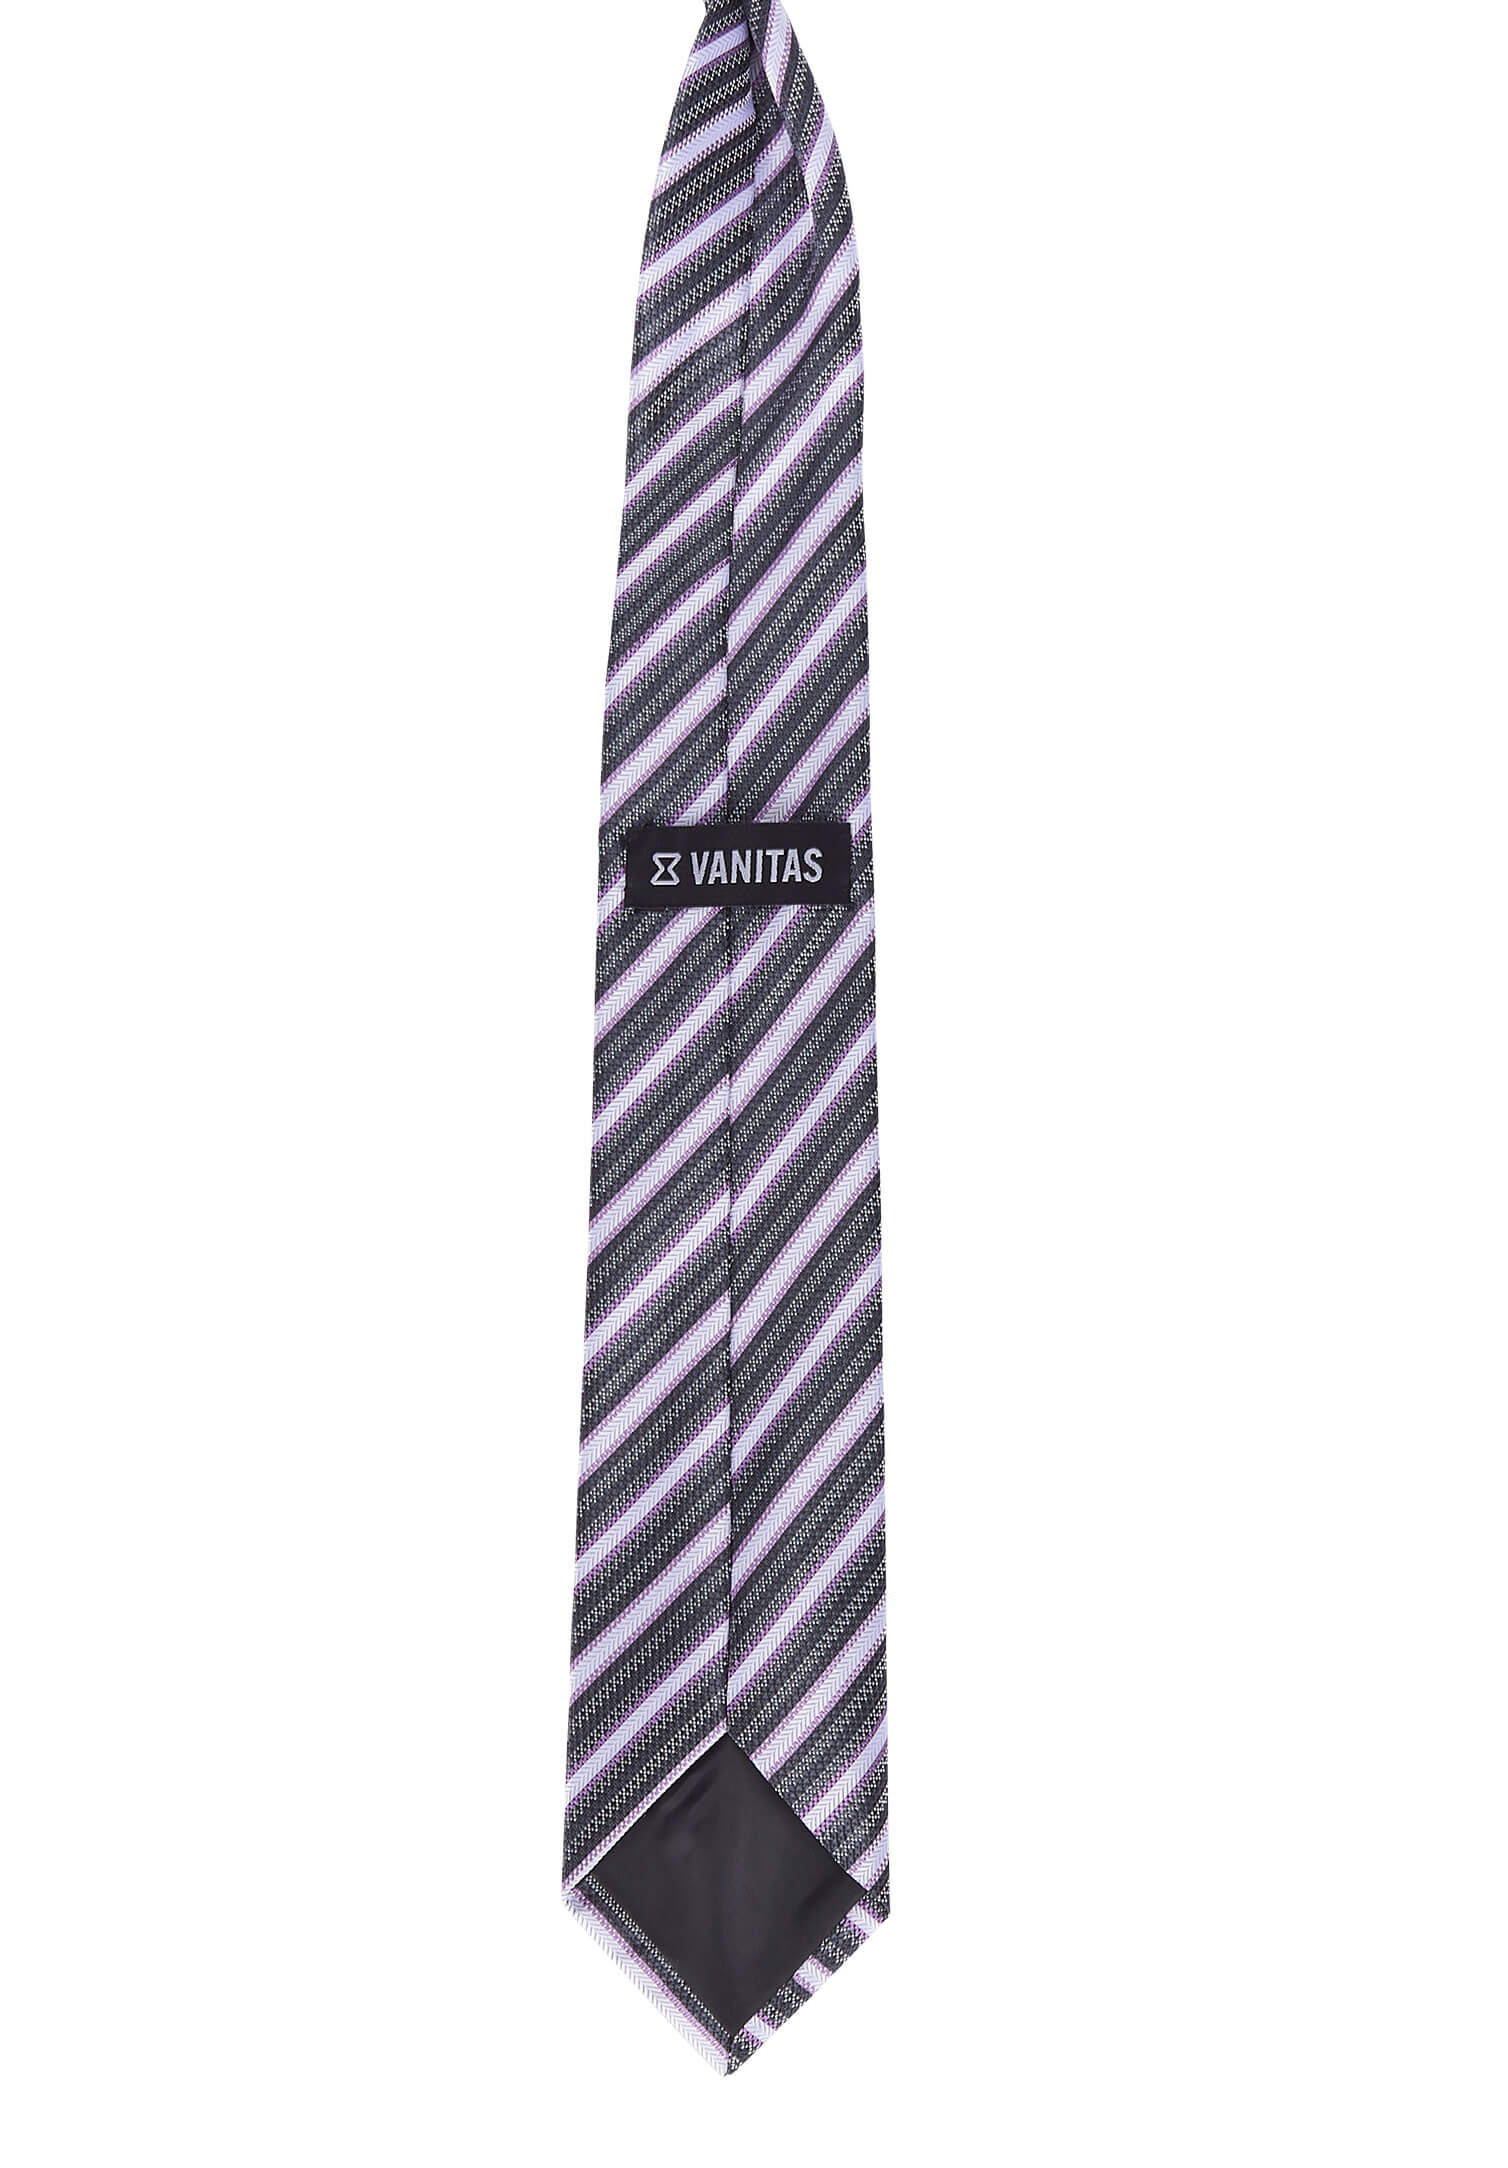 Krawatte vorgebunden mit Gummizug - modische Streifen flieder/grau/anthrazit